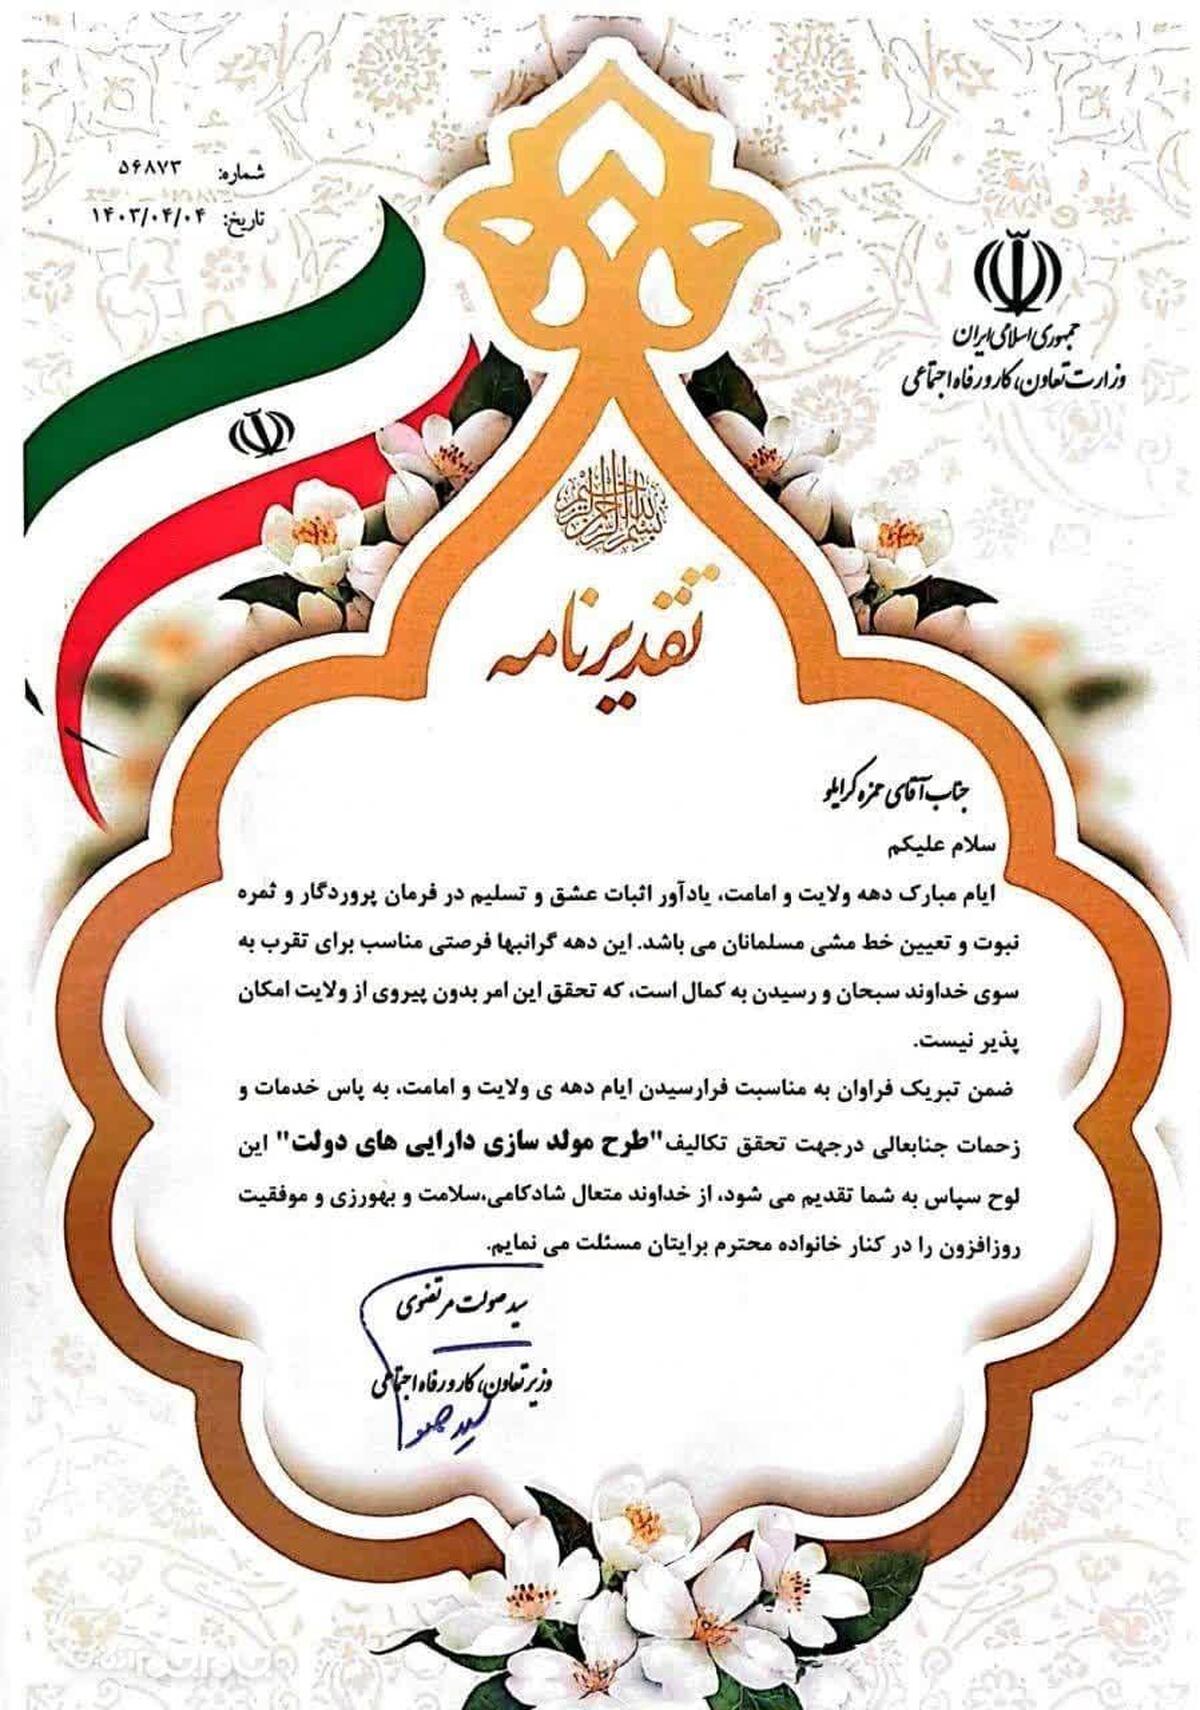 وزیر تعاون، کار و رفاه اجتماعی از کرایلو مدیرکل آموزش فنی و حرفه ای استان گلستان تقدیر کرد